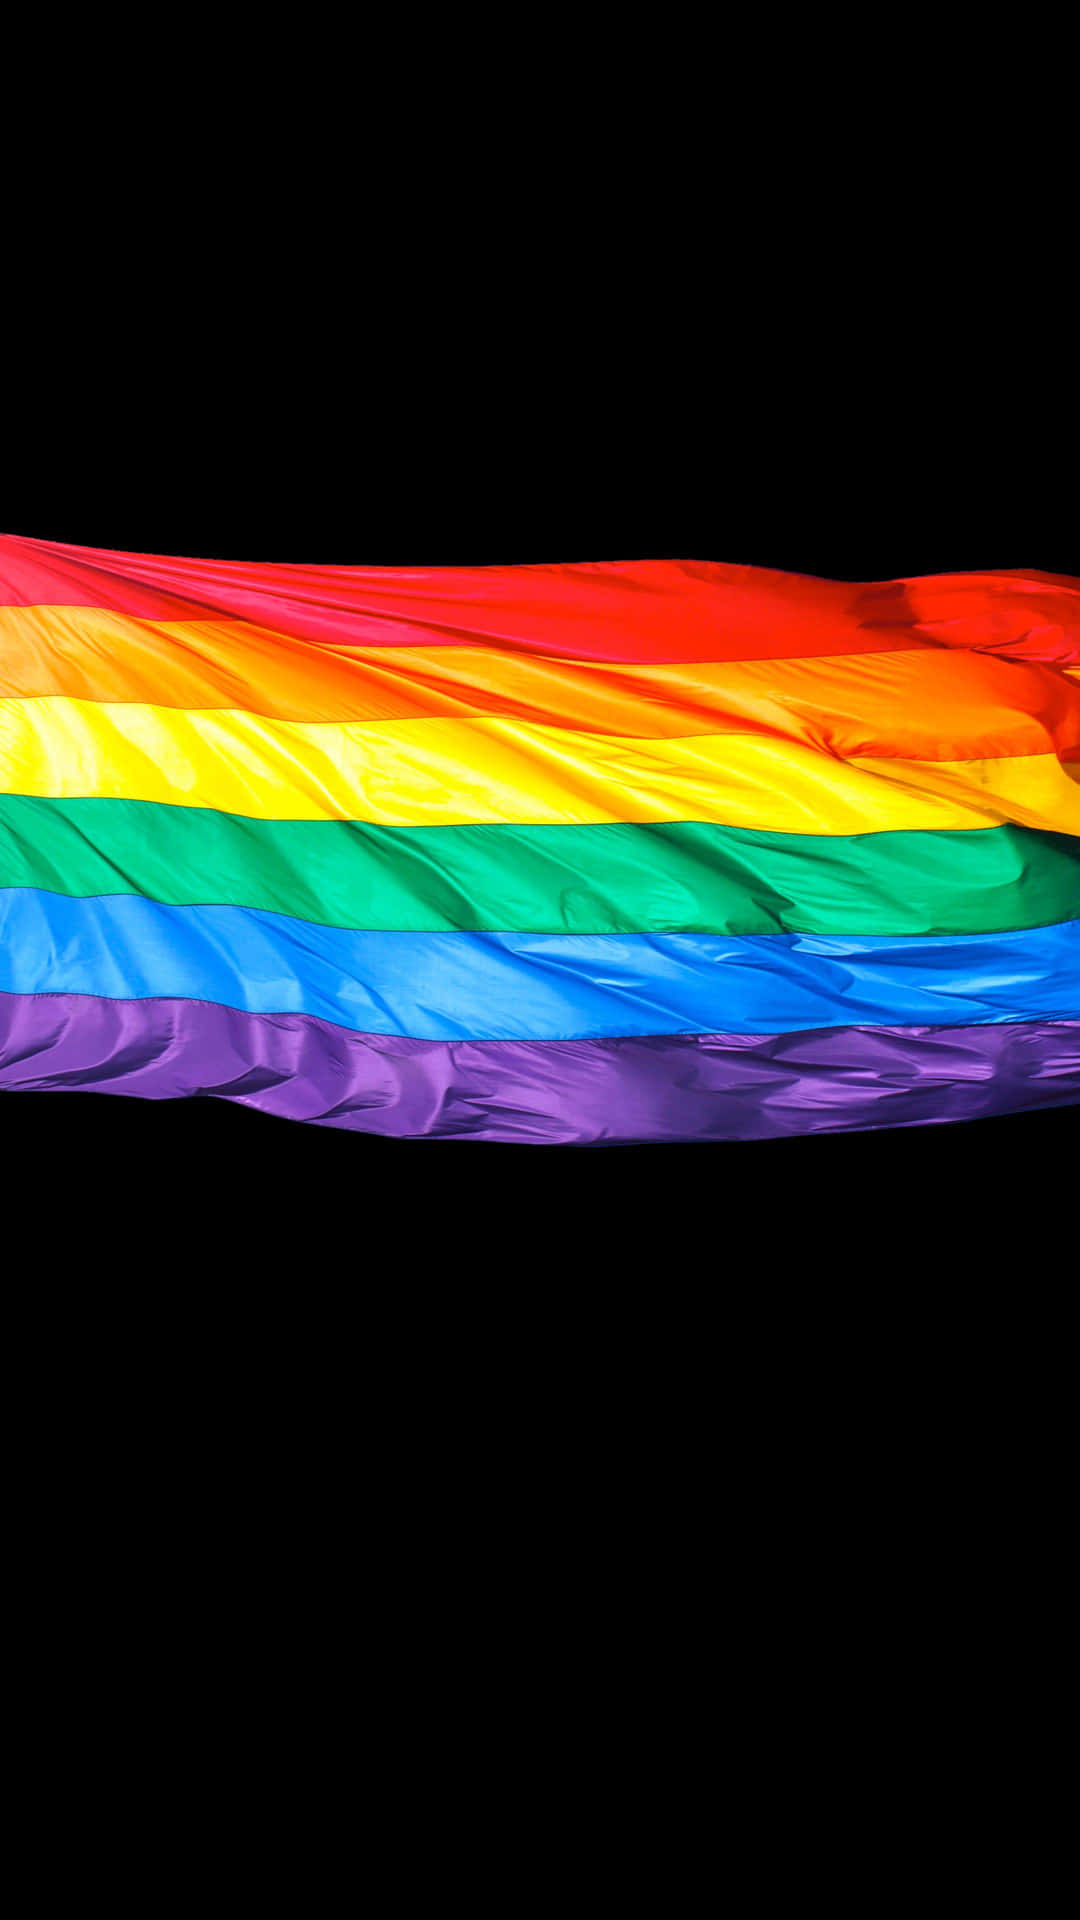 Vis stolthed med et stilfuldt LGBT iPhone tapet. Wallpaper